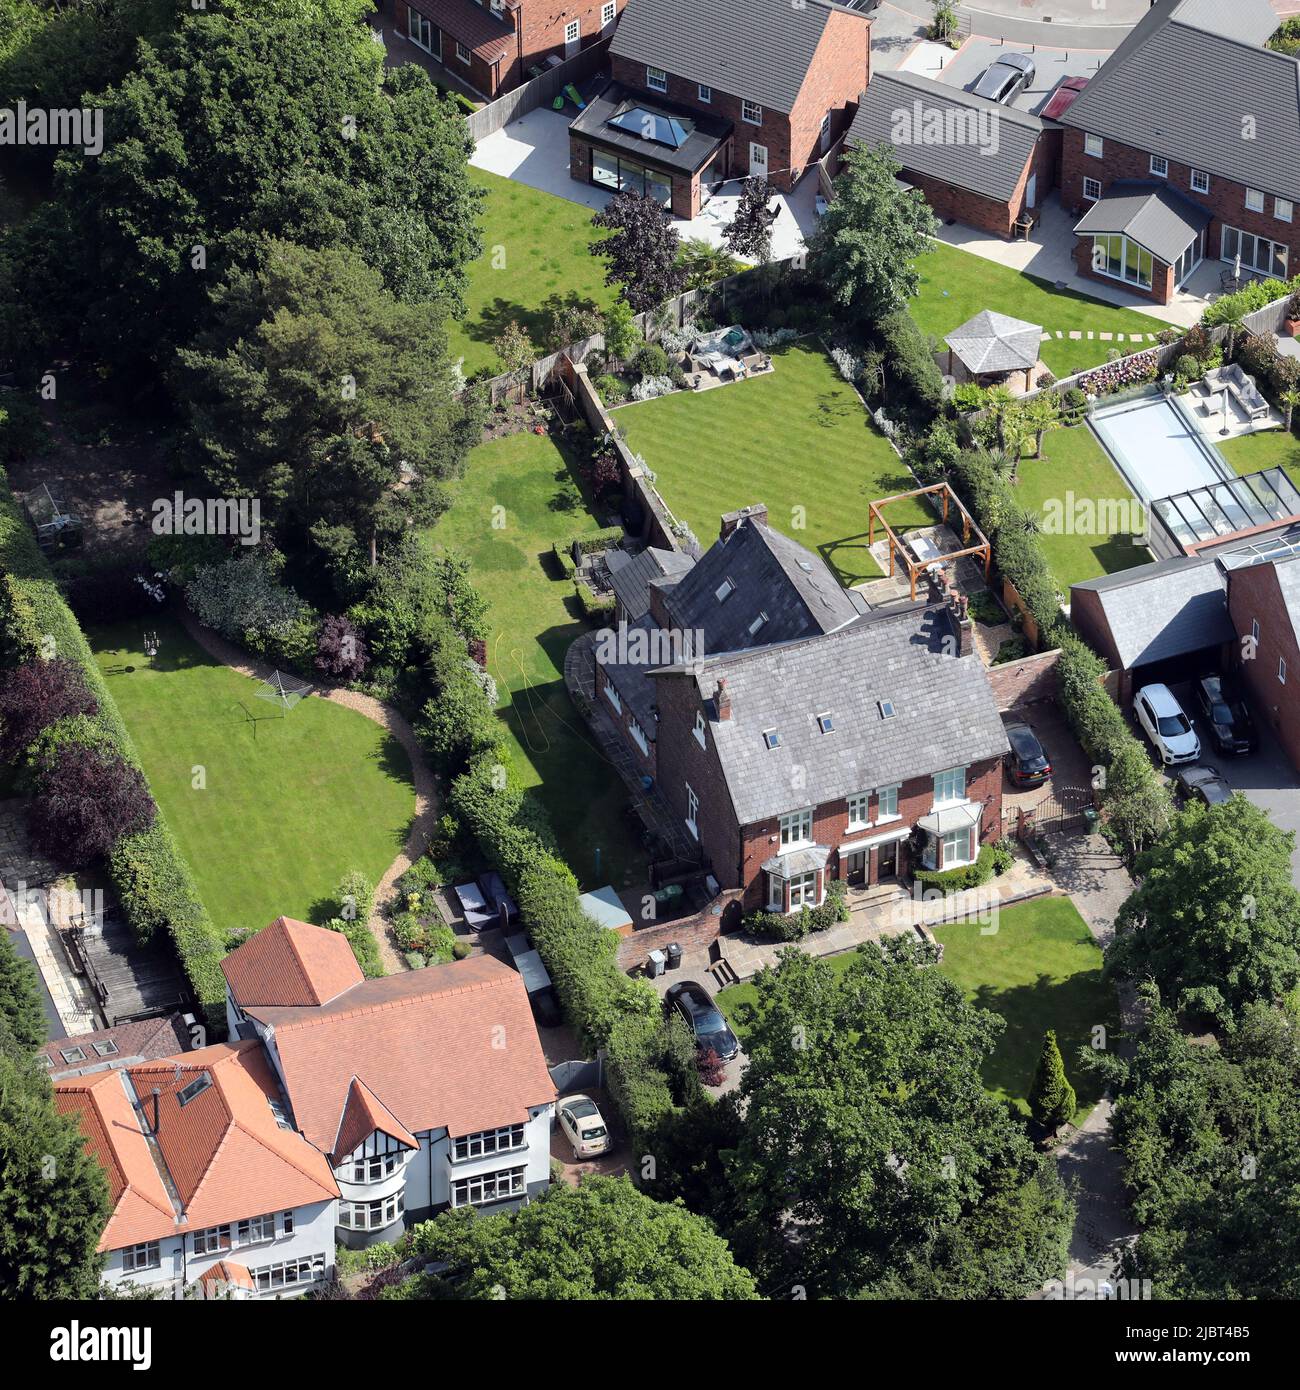 Vue aérienne de la vieille maison d'Alan Turing (où il est mort) à Wilmslow, Cheshire (côté gauche de la maison mitoyenne) Banque D'Images